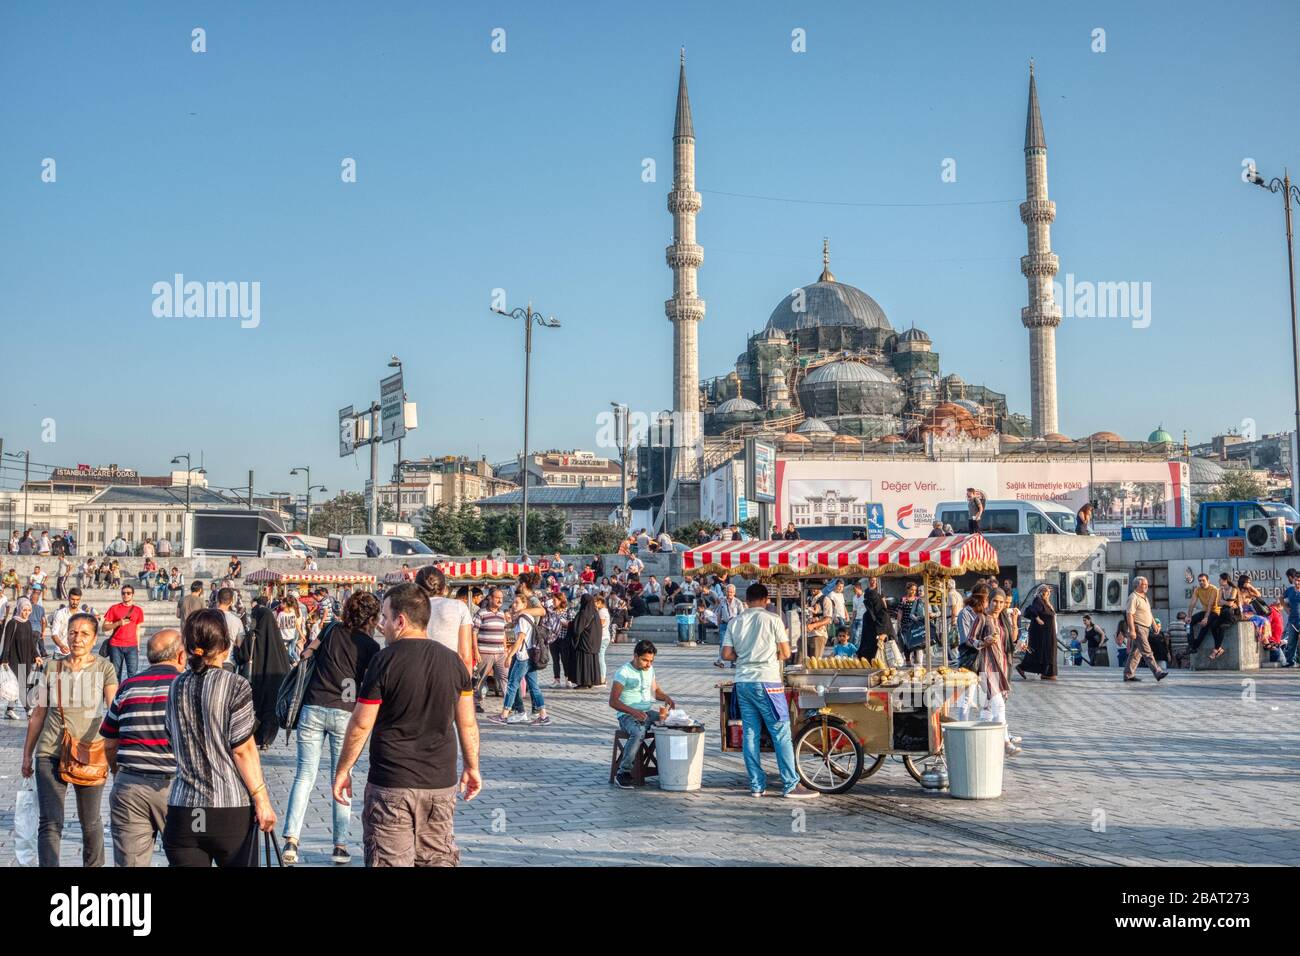 Istanbul, Turchia - 18 settembre 2017: Fornitore di cibo di strada, con una moschea in fase di costruzione in background Foto Stock